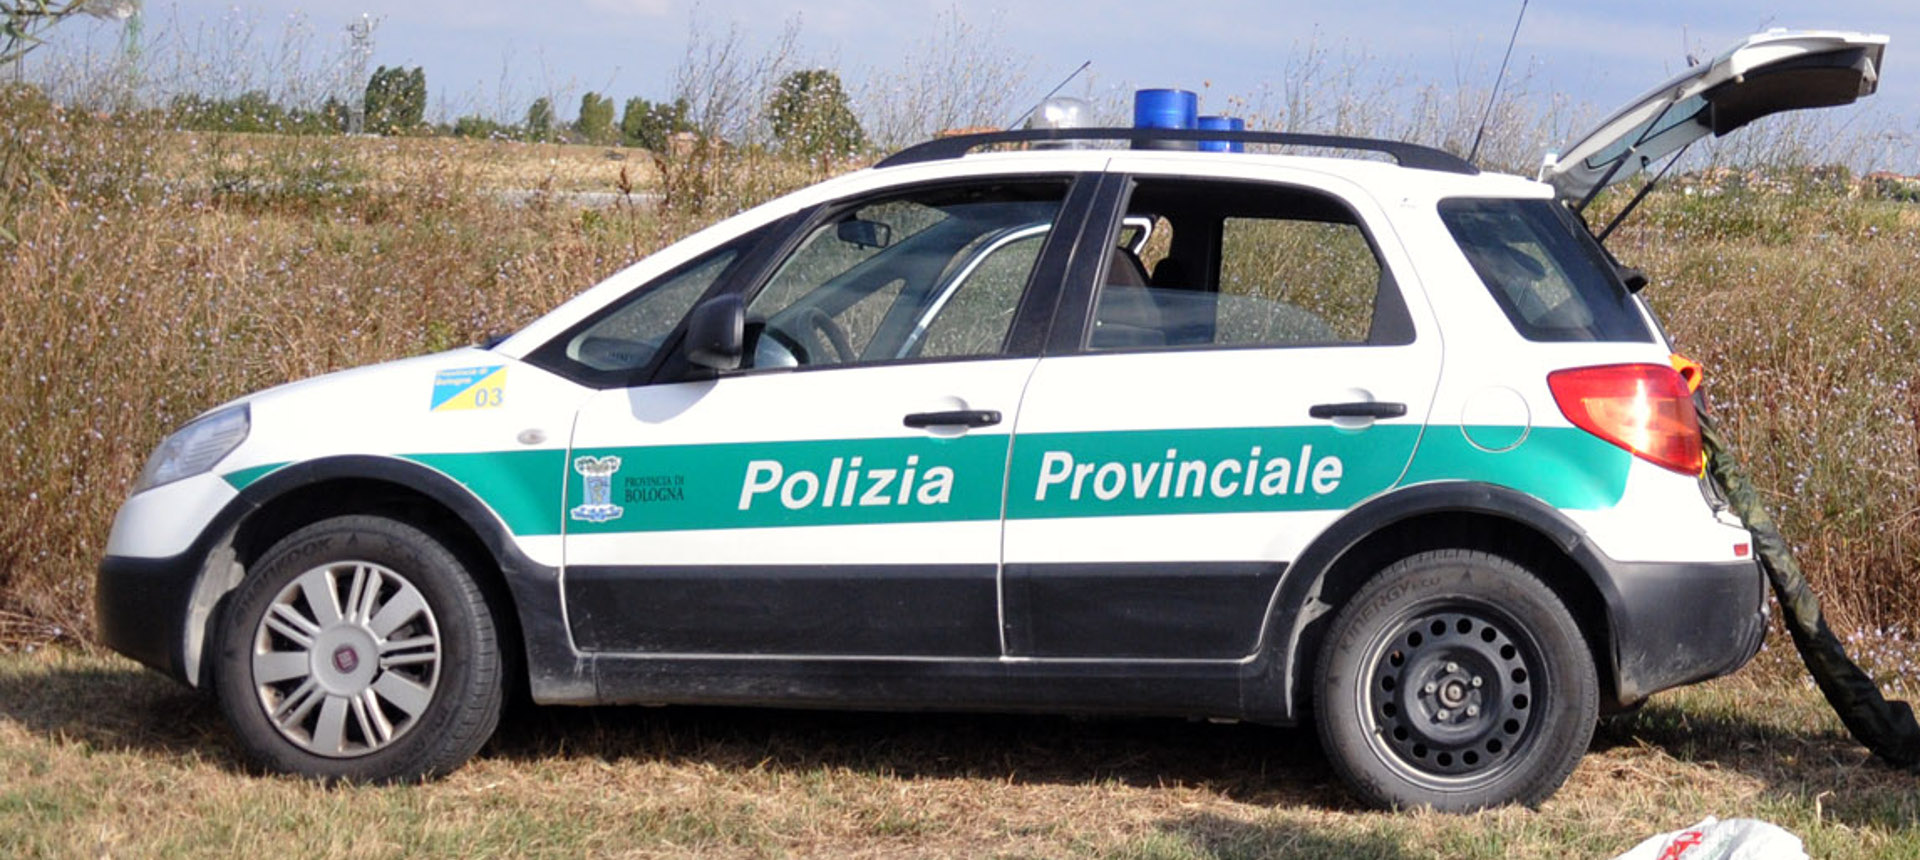 Automobile della Polizia provinciale - Archivio Città metropolitana di Bologna